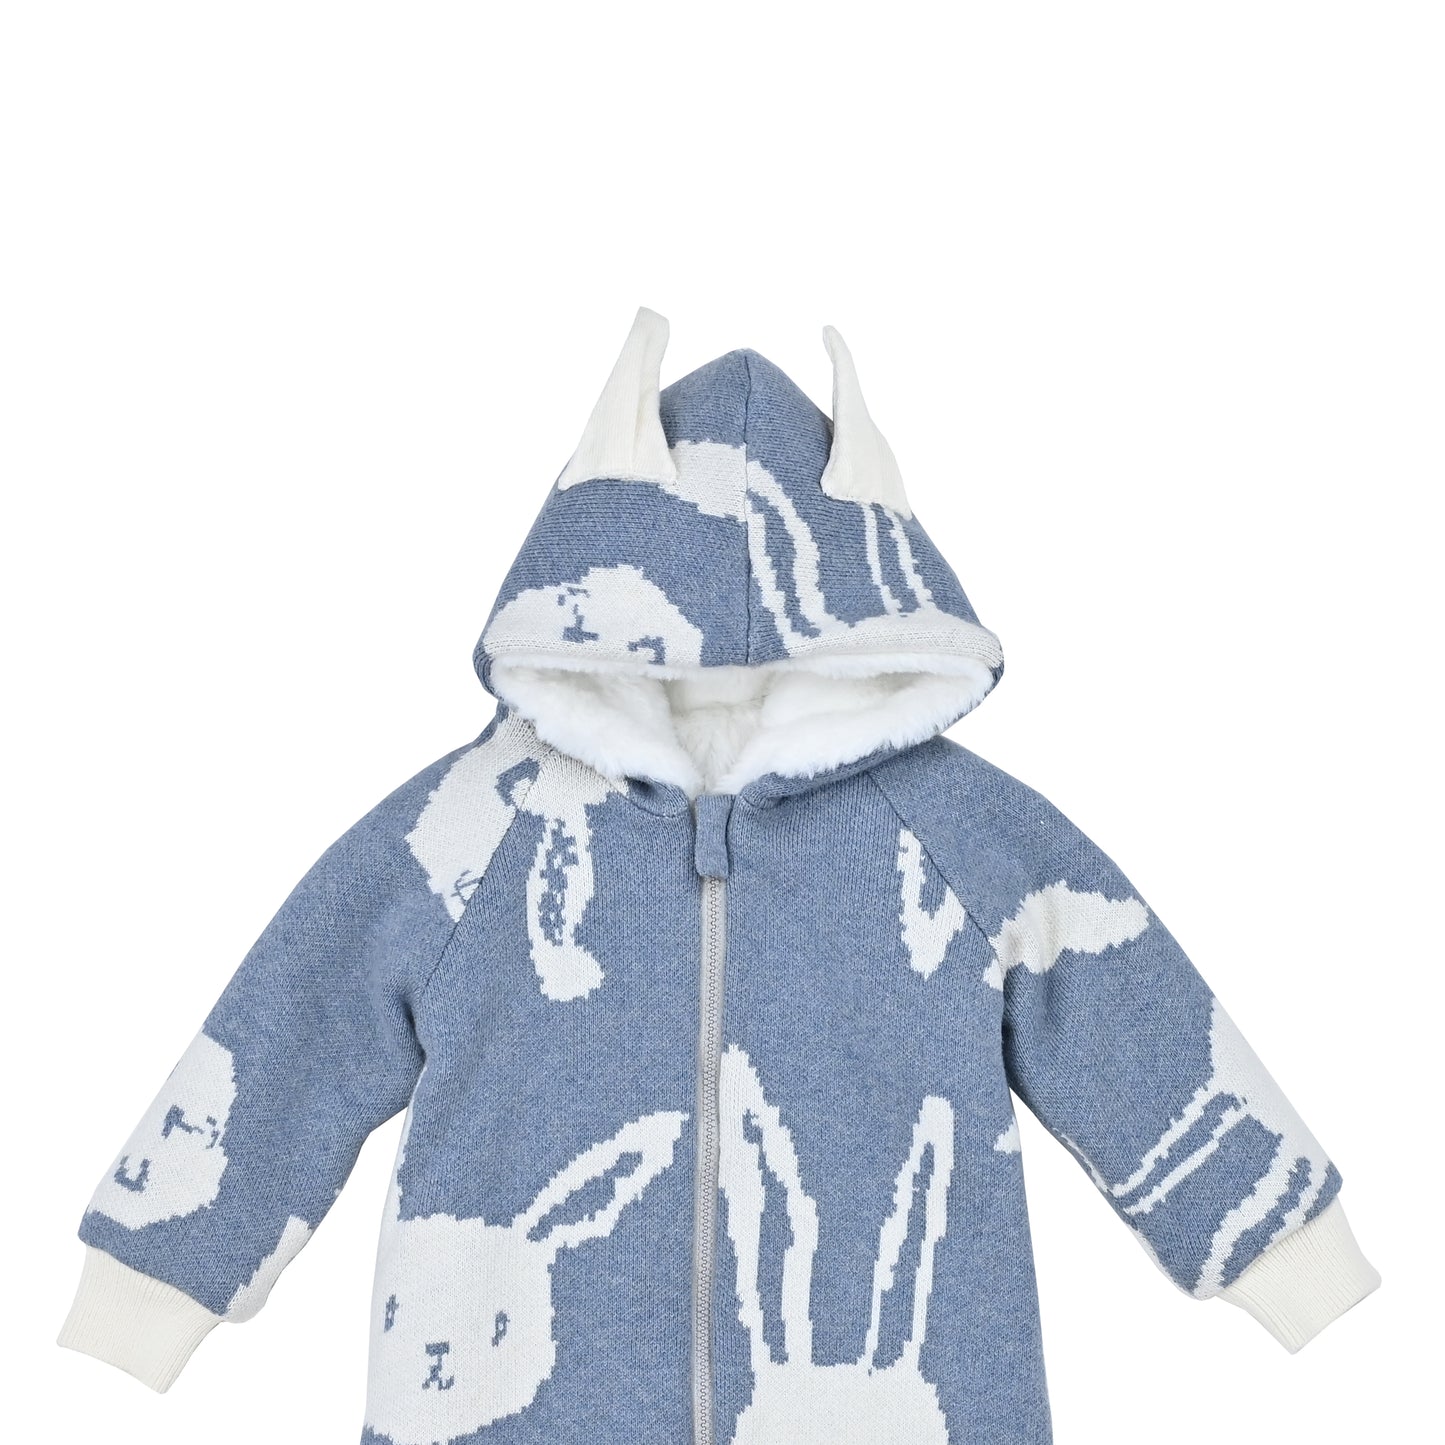 嬰兒衣服 - 白兔圖案毛毛長袖拉鍊連體衣